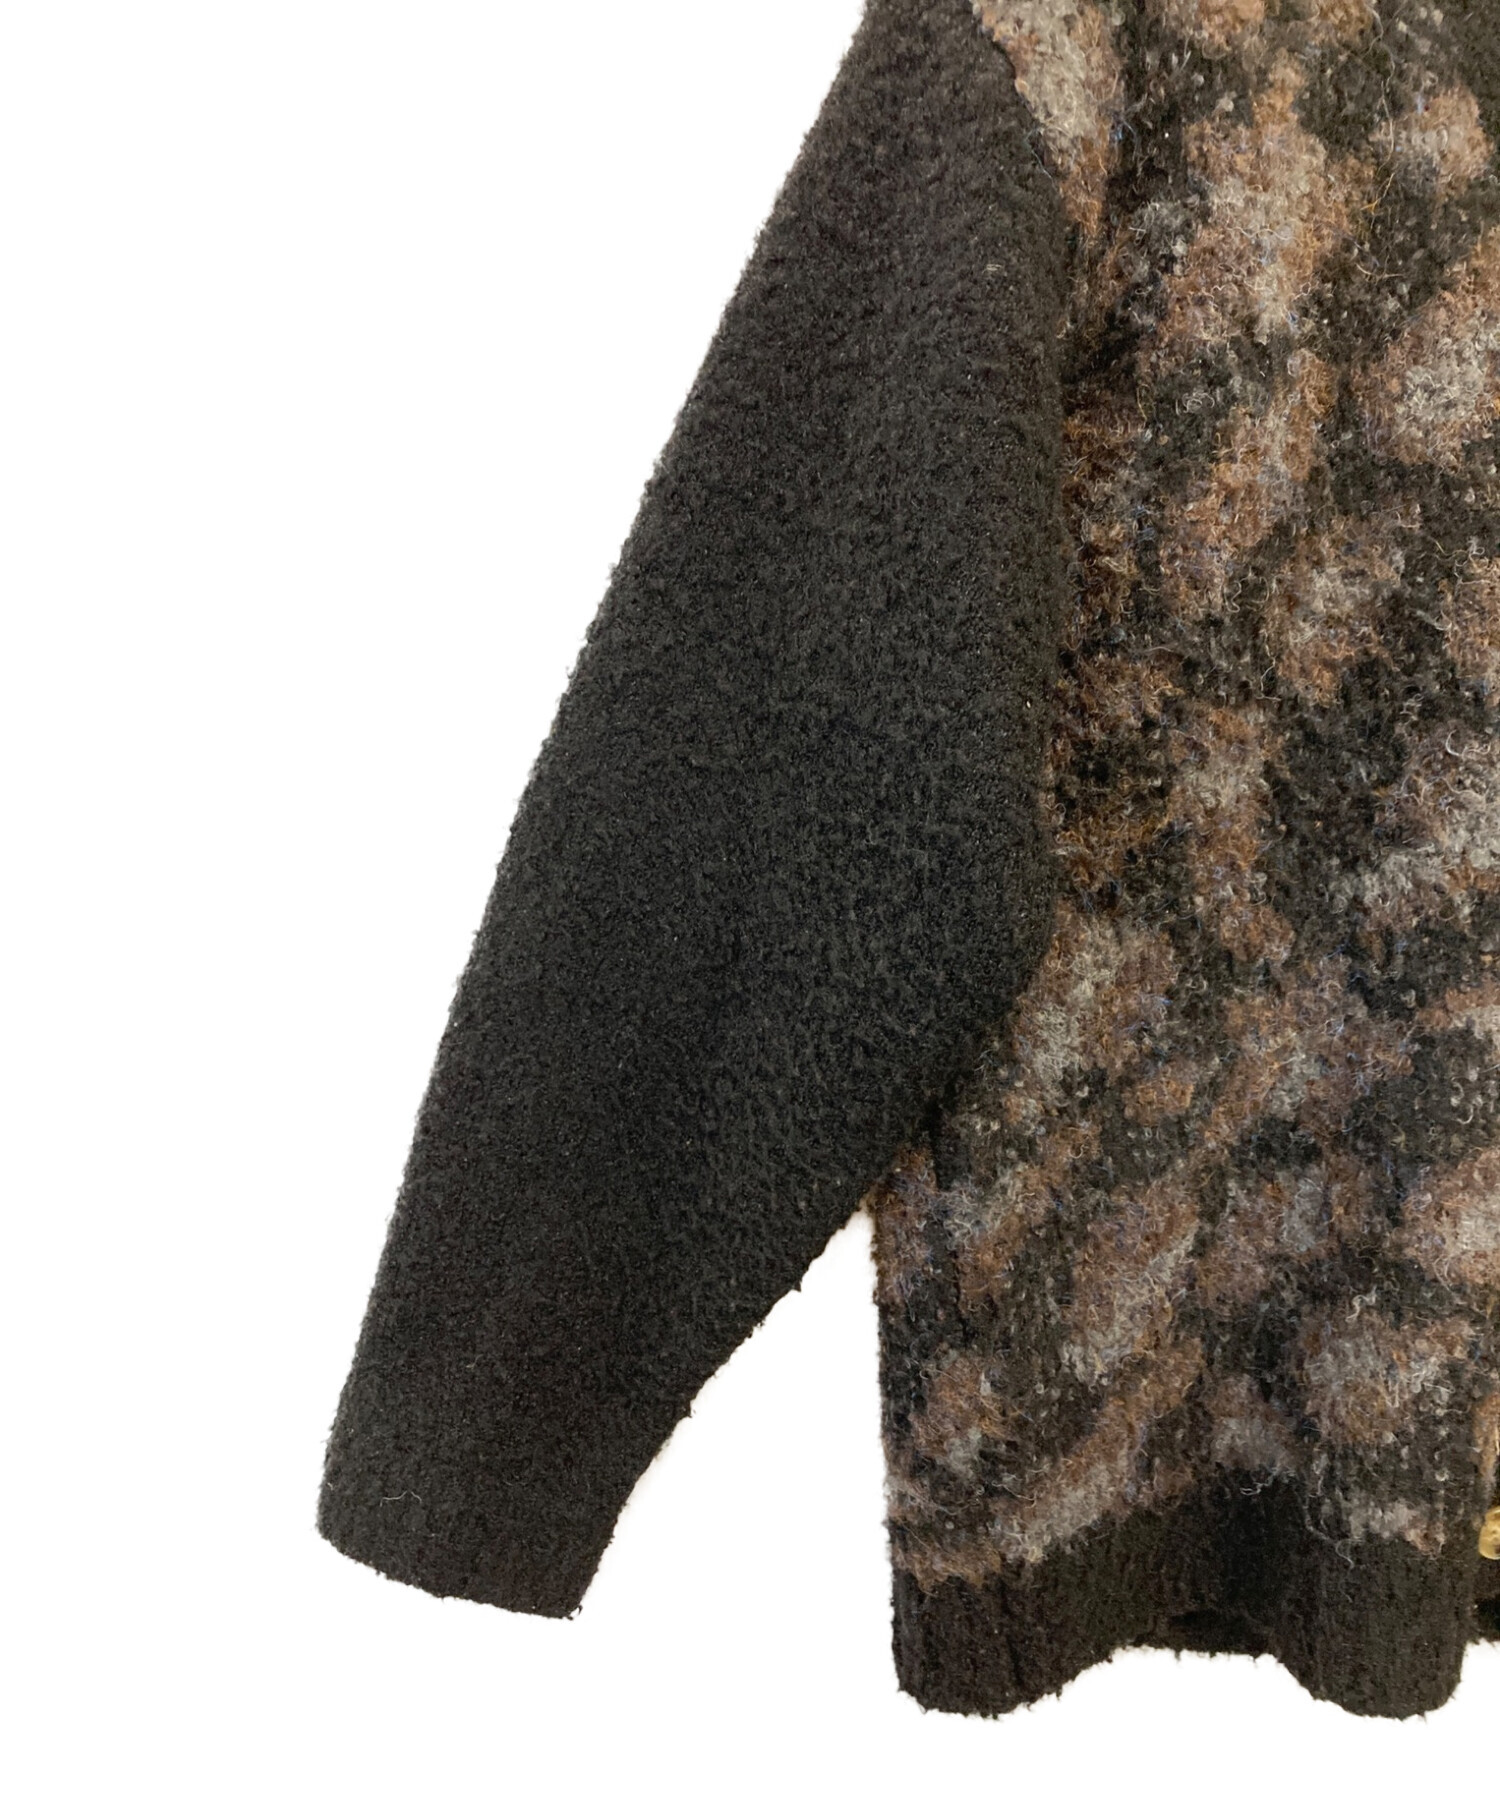 TTT MSW (ティーモダンストリートウェア) leopard knit cardigan ブラウン サイズ:M